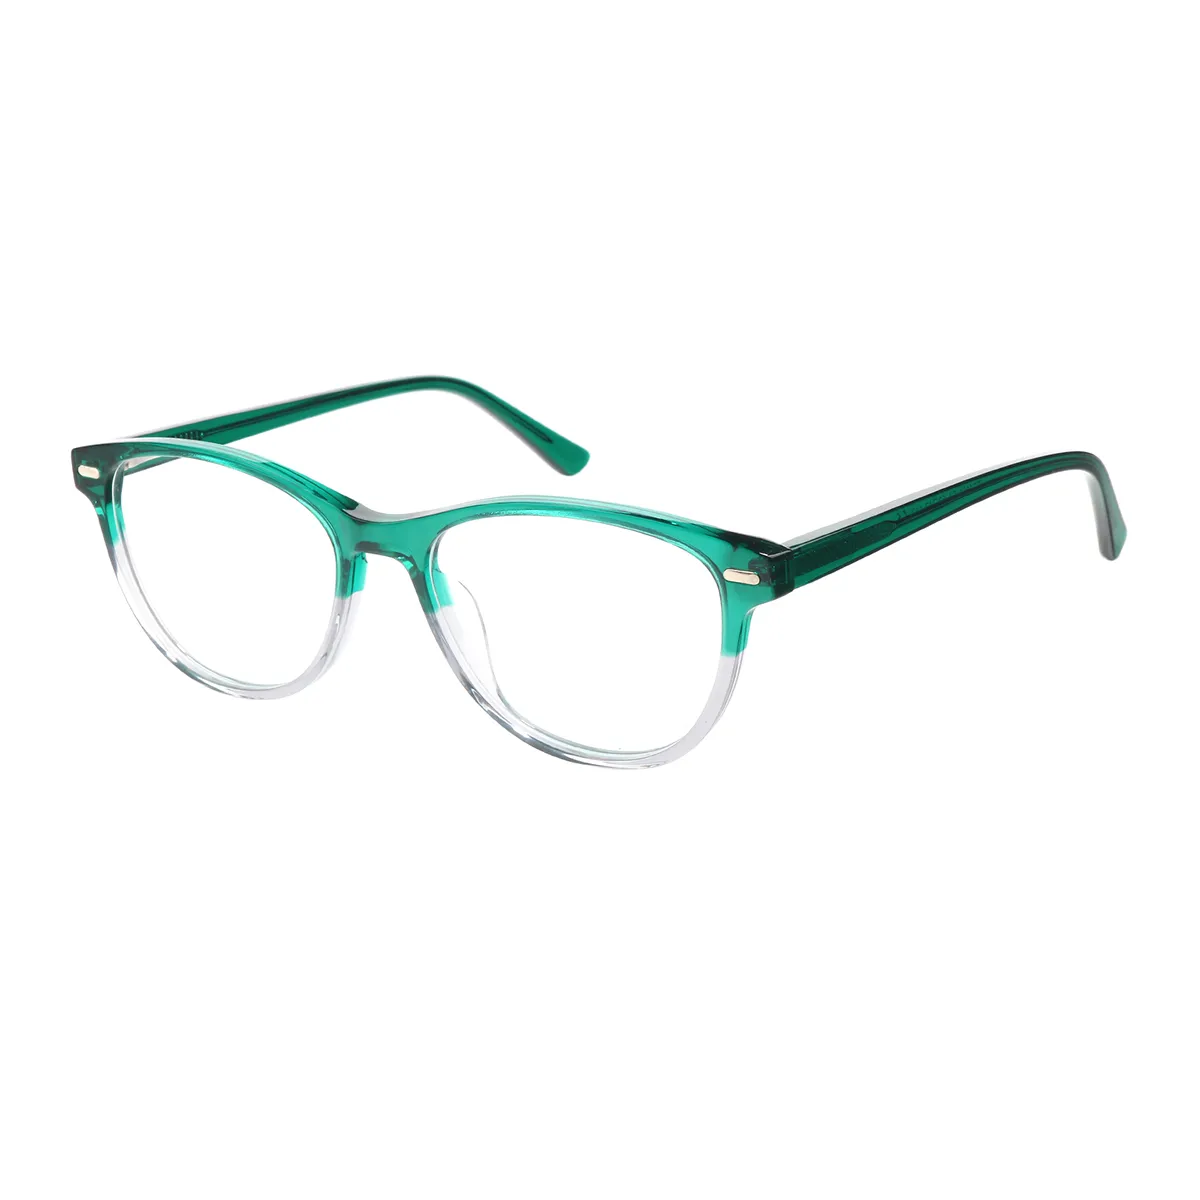 Agricola - Oval Green Glasses for Men & Women